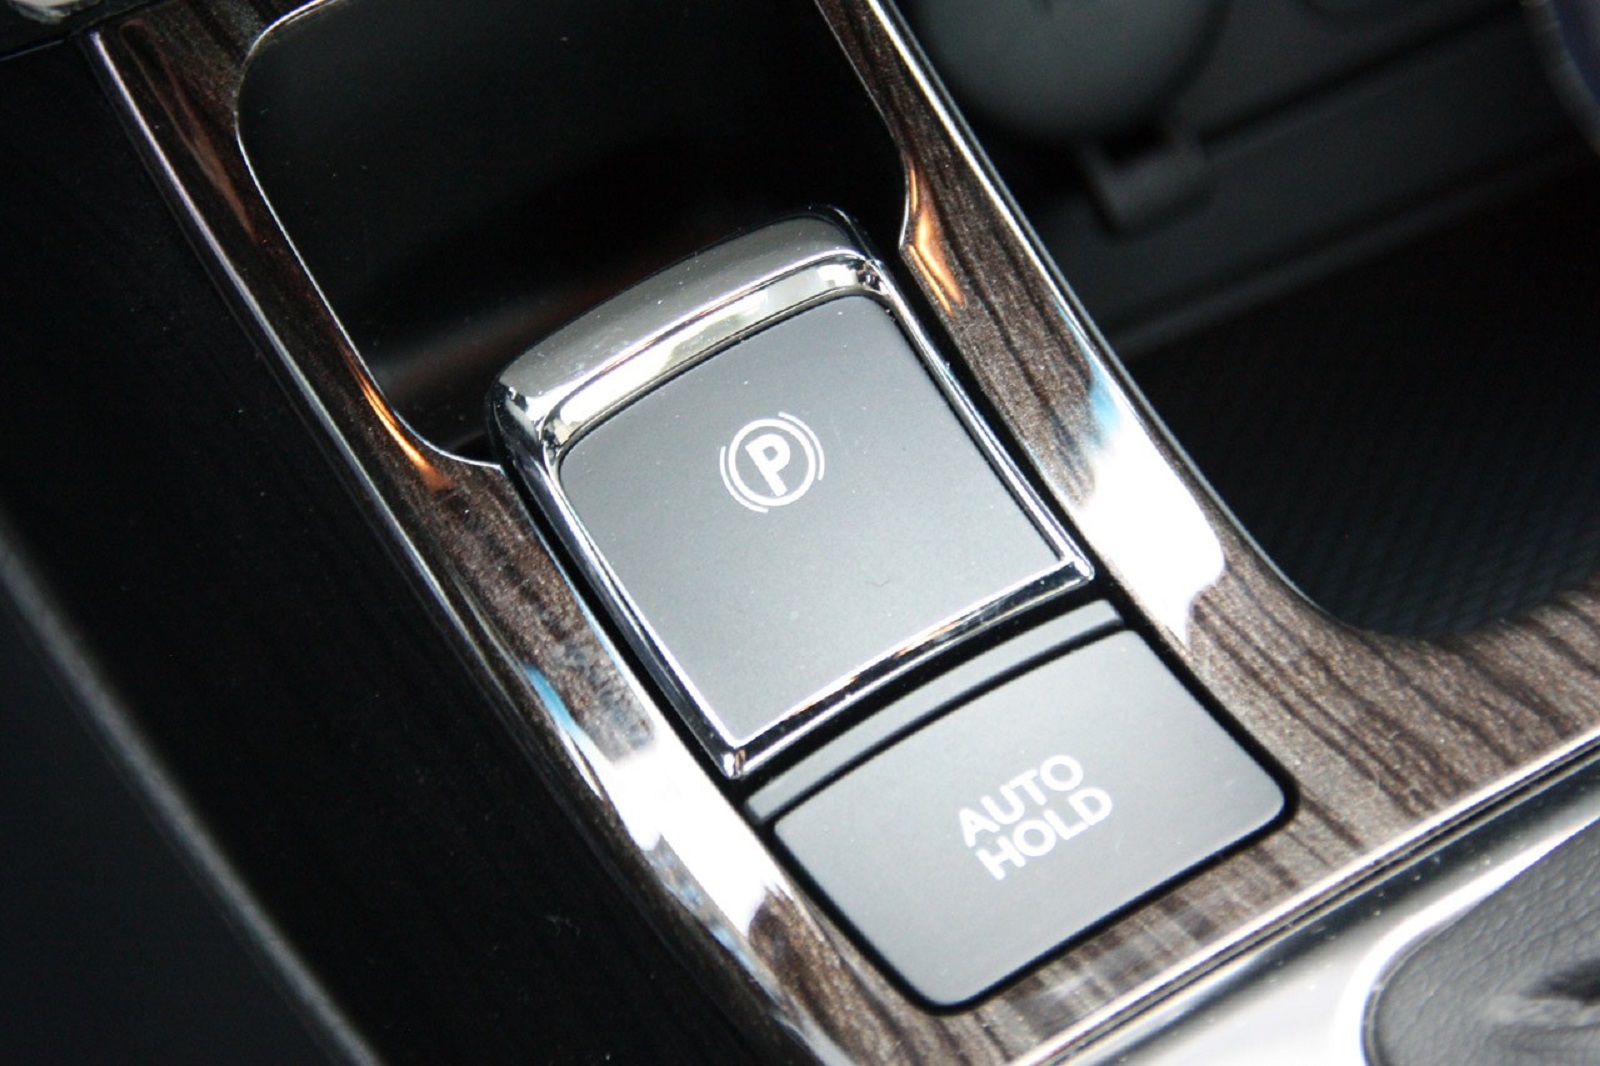 Phanh tay điện tử trên xe ô tô là gì, ưu và nhược điểm cần biết - Ảnh 2.